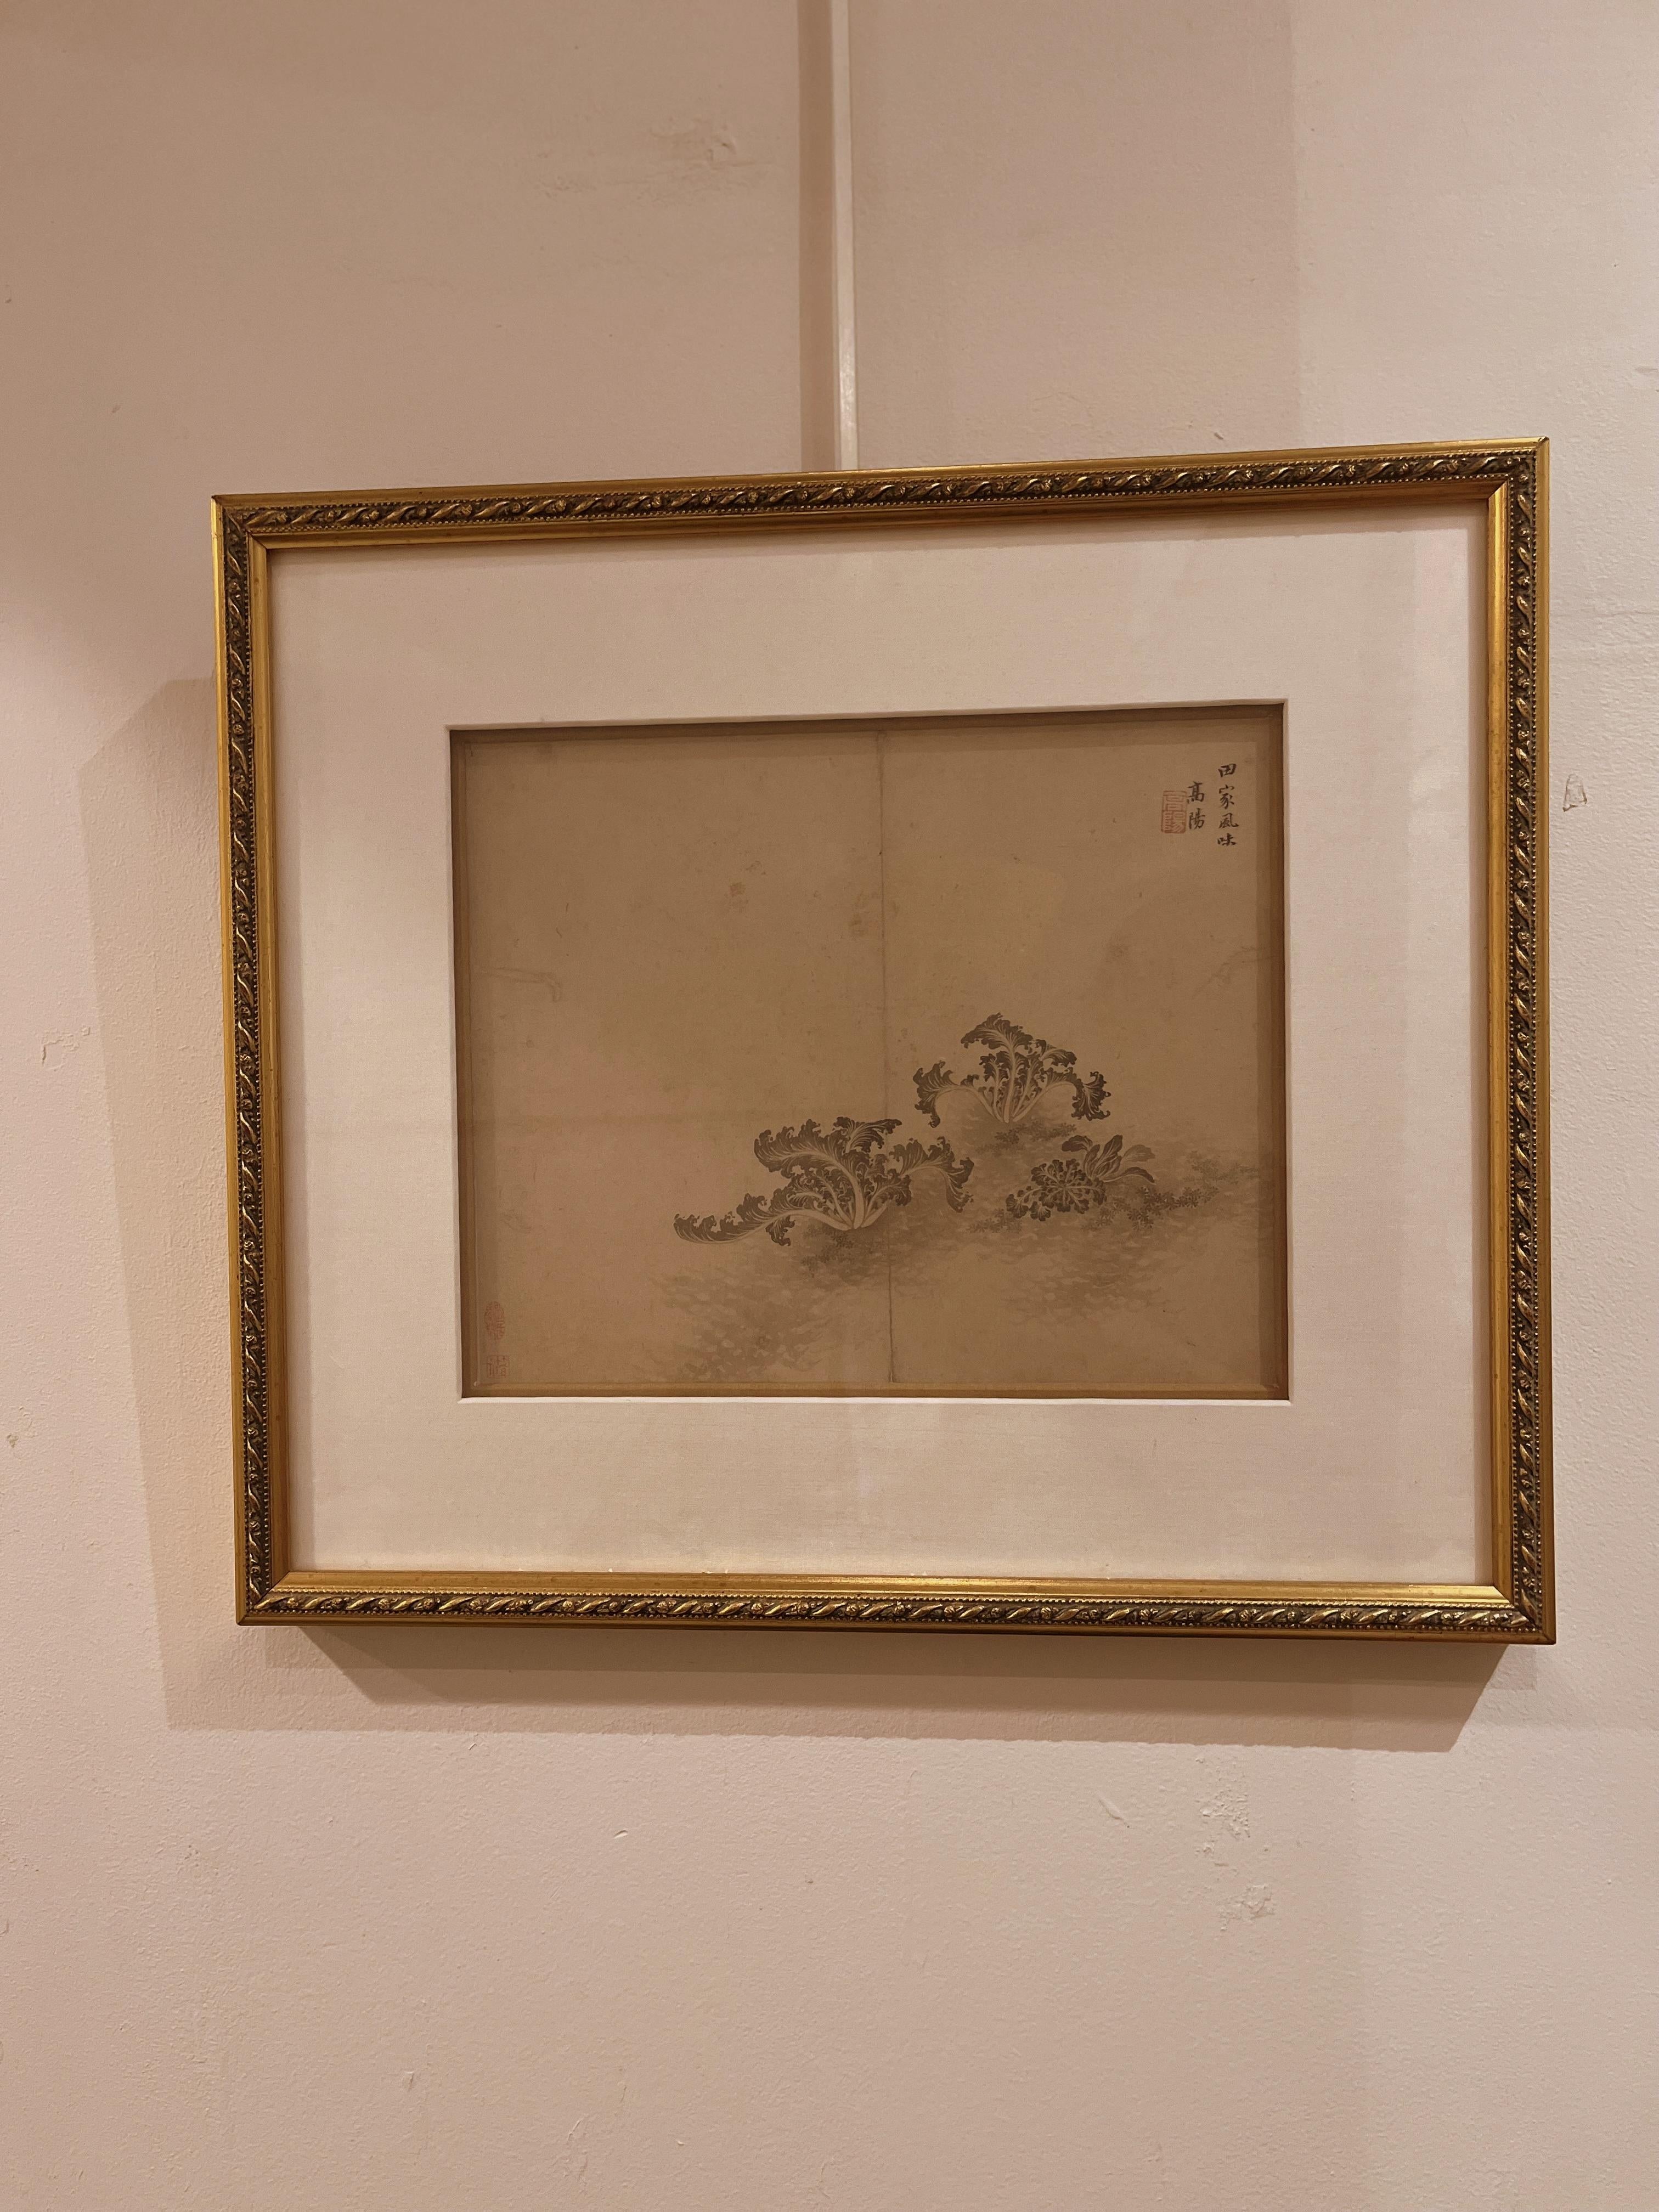 Pinceau chinois raffiné représentant des plantes, encre sur papier de riz, 19e siècle, signé avec un sceau.
Taille totale :  17.6  la largeur.  Hauteur de 15,5 pouces
Taille de l'image :  10.6